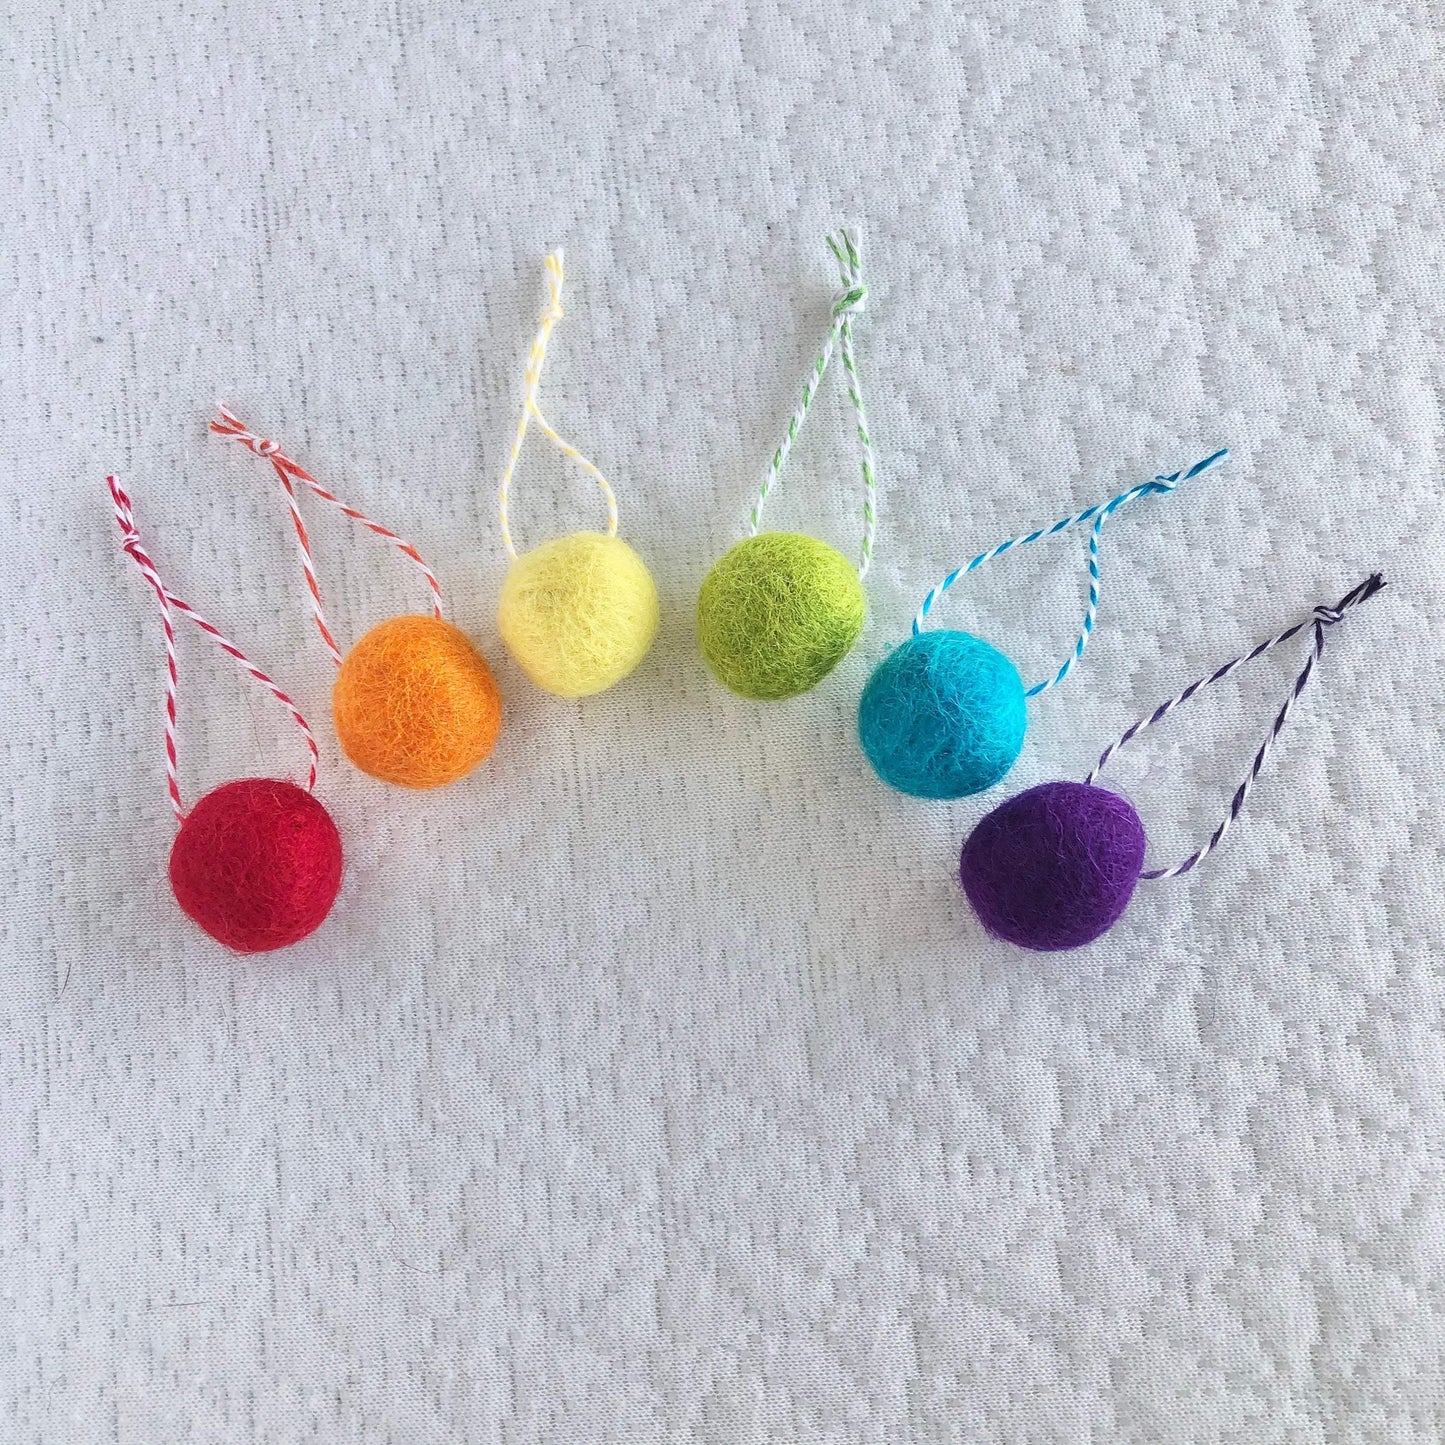 Rainbow Felt Ball Ornaments - Redheadnblue